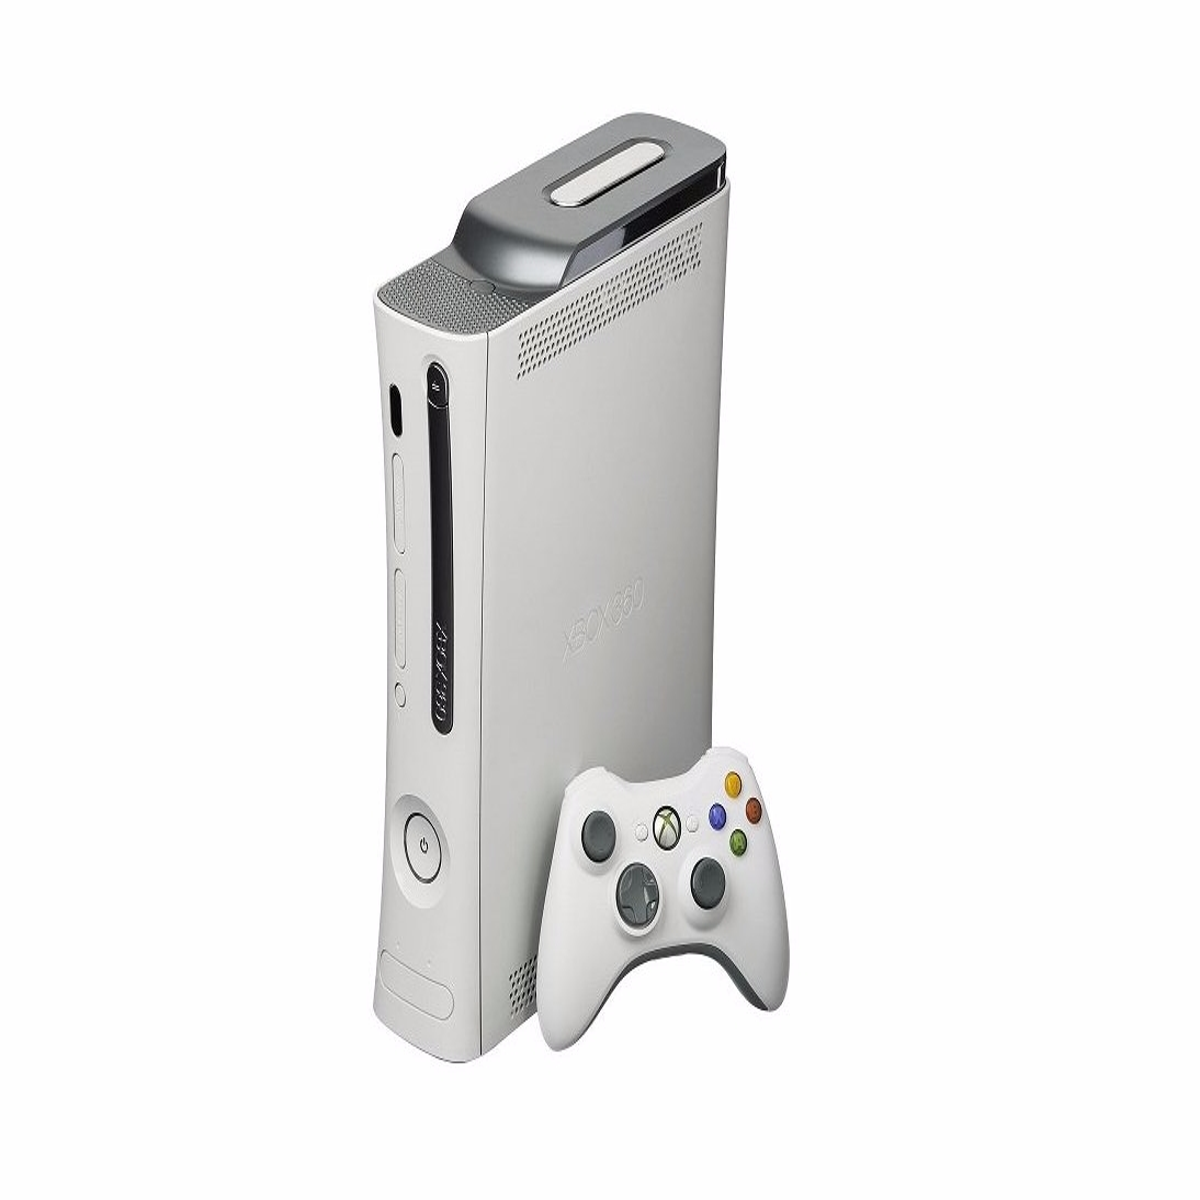 Xbox s купить днс. Игровая приставка Xbox 360 s. Хбокс 360 фат. Xbox 360 fat 60 GB. Xbox 360 e.